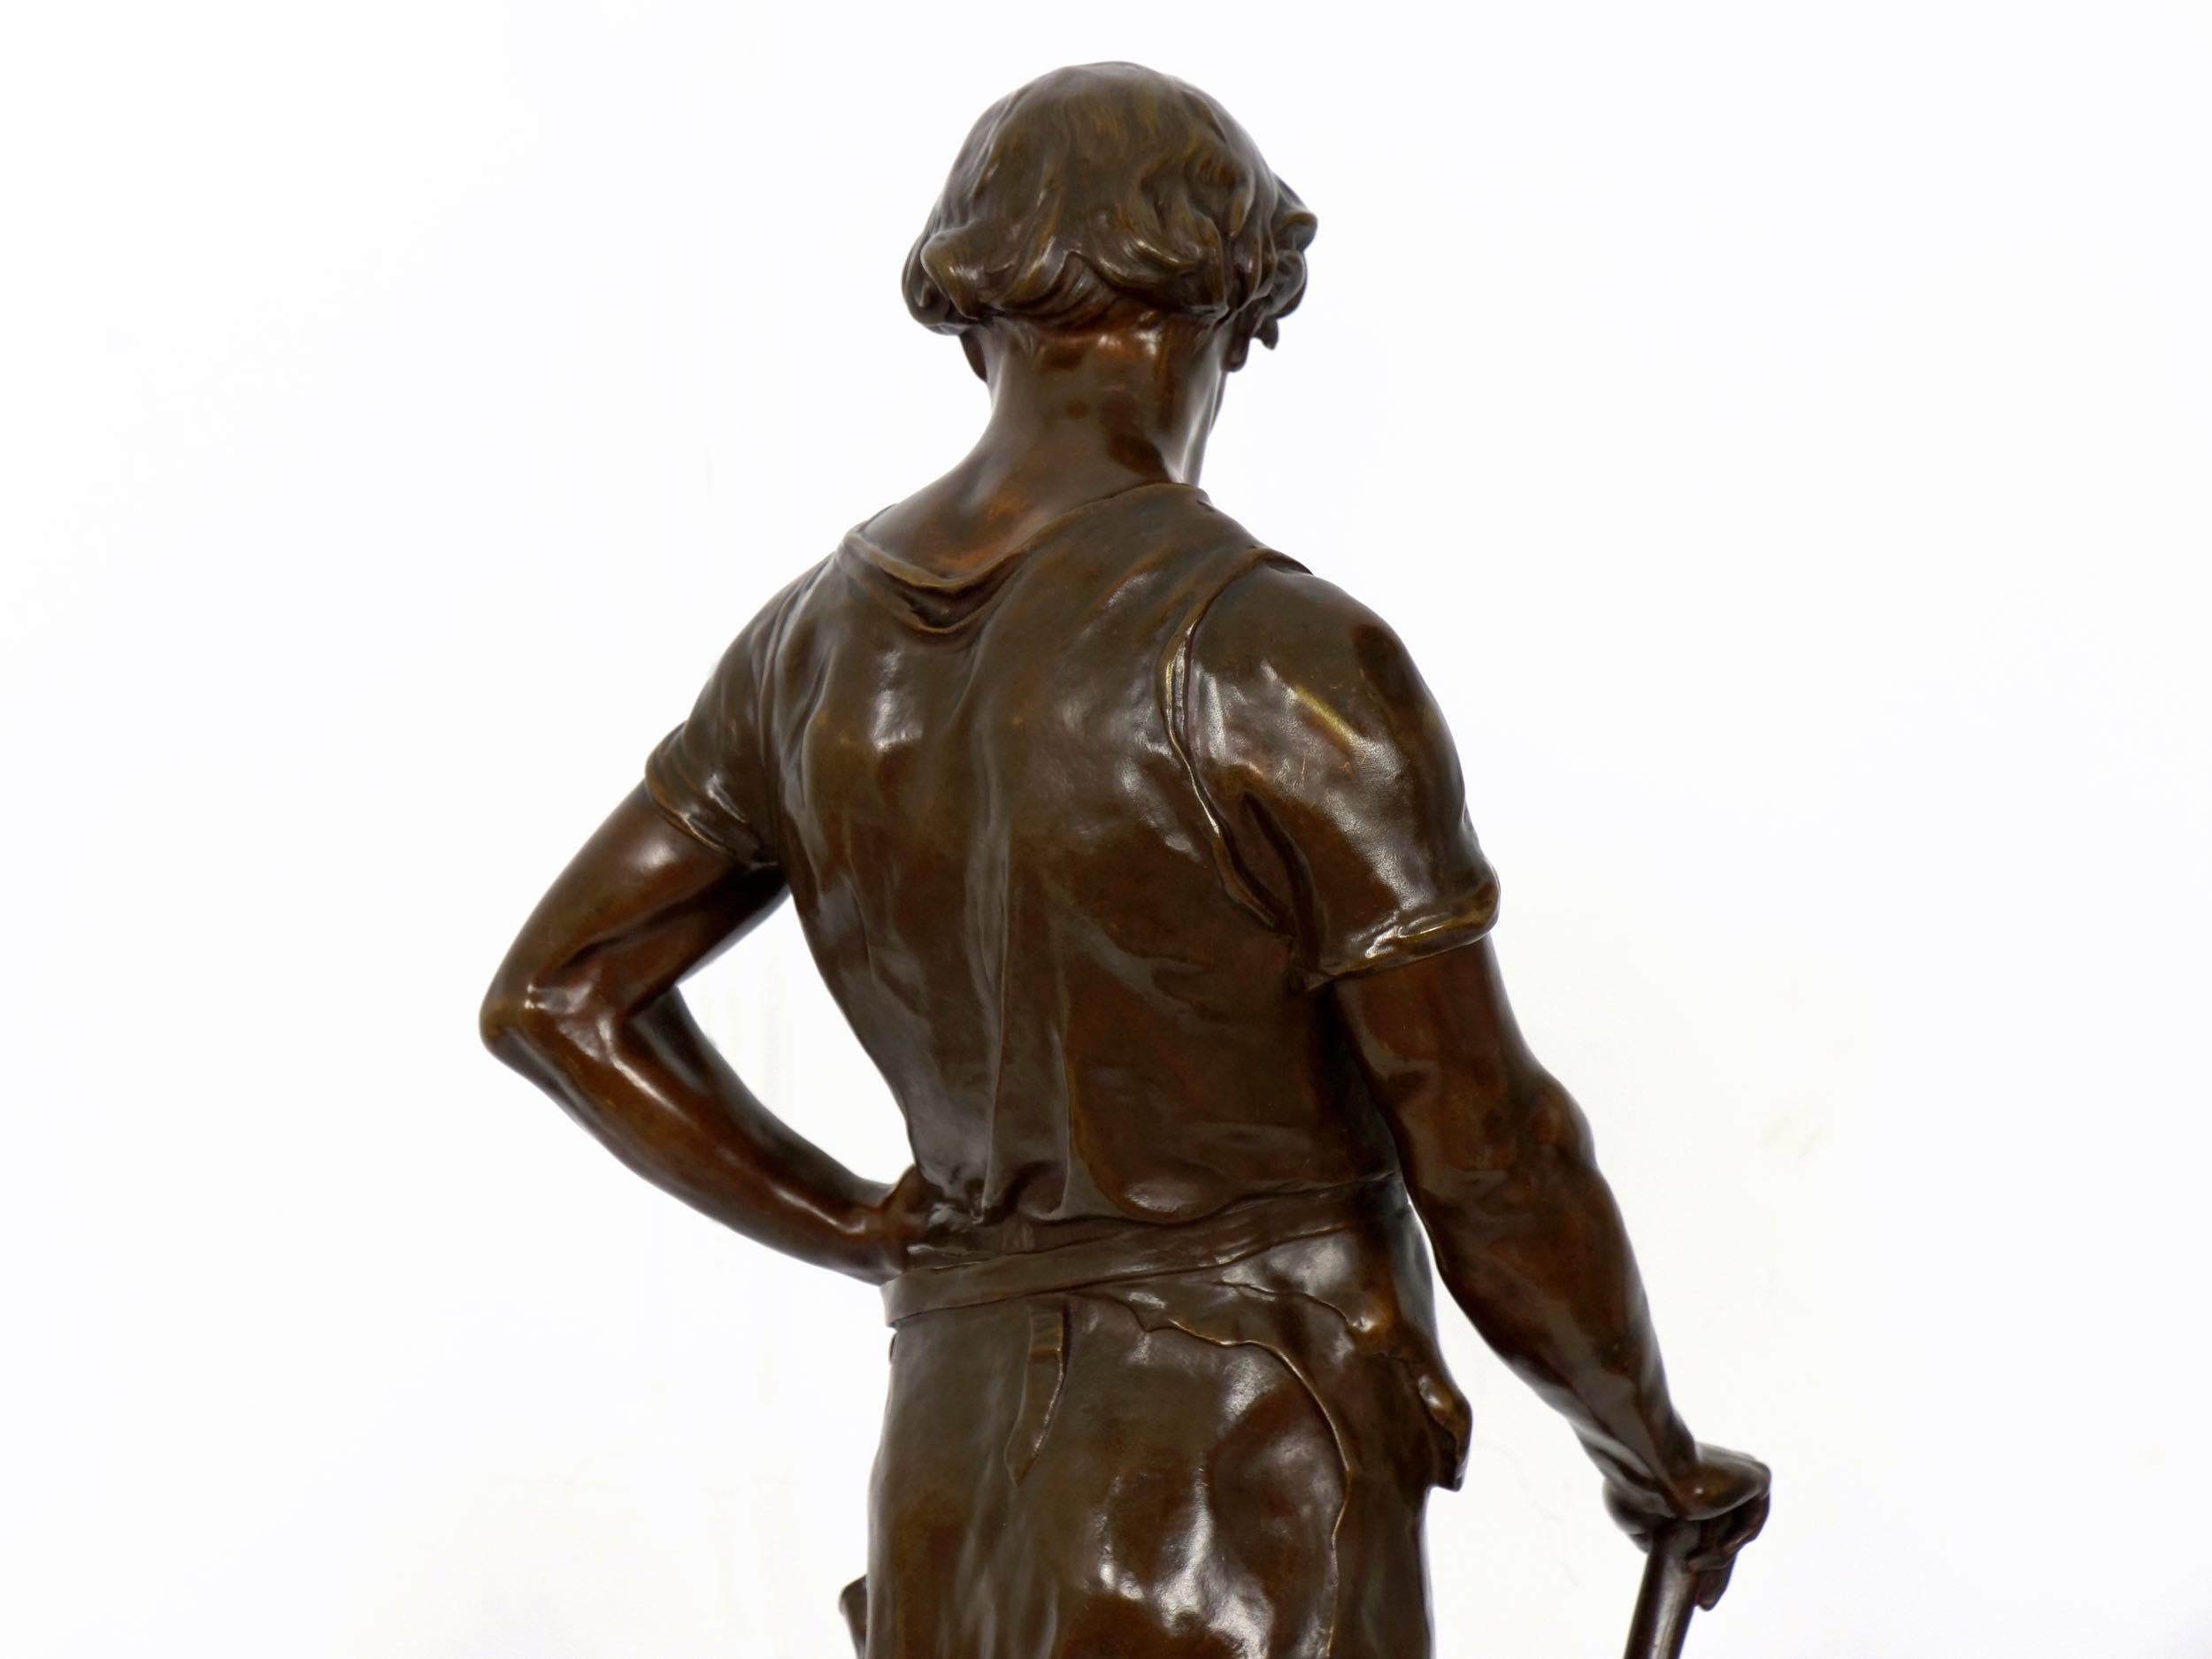 19th Century French Antique Bronze Sculpture “Pax et Labor” by Emile Picault 12